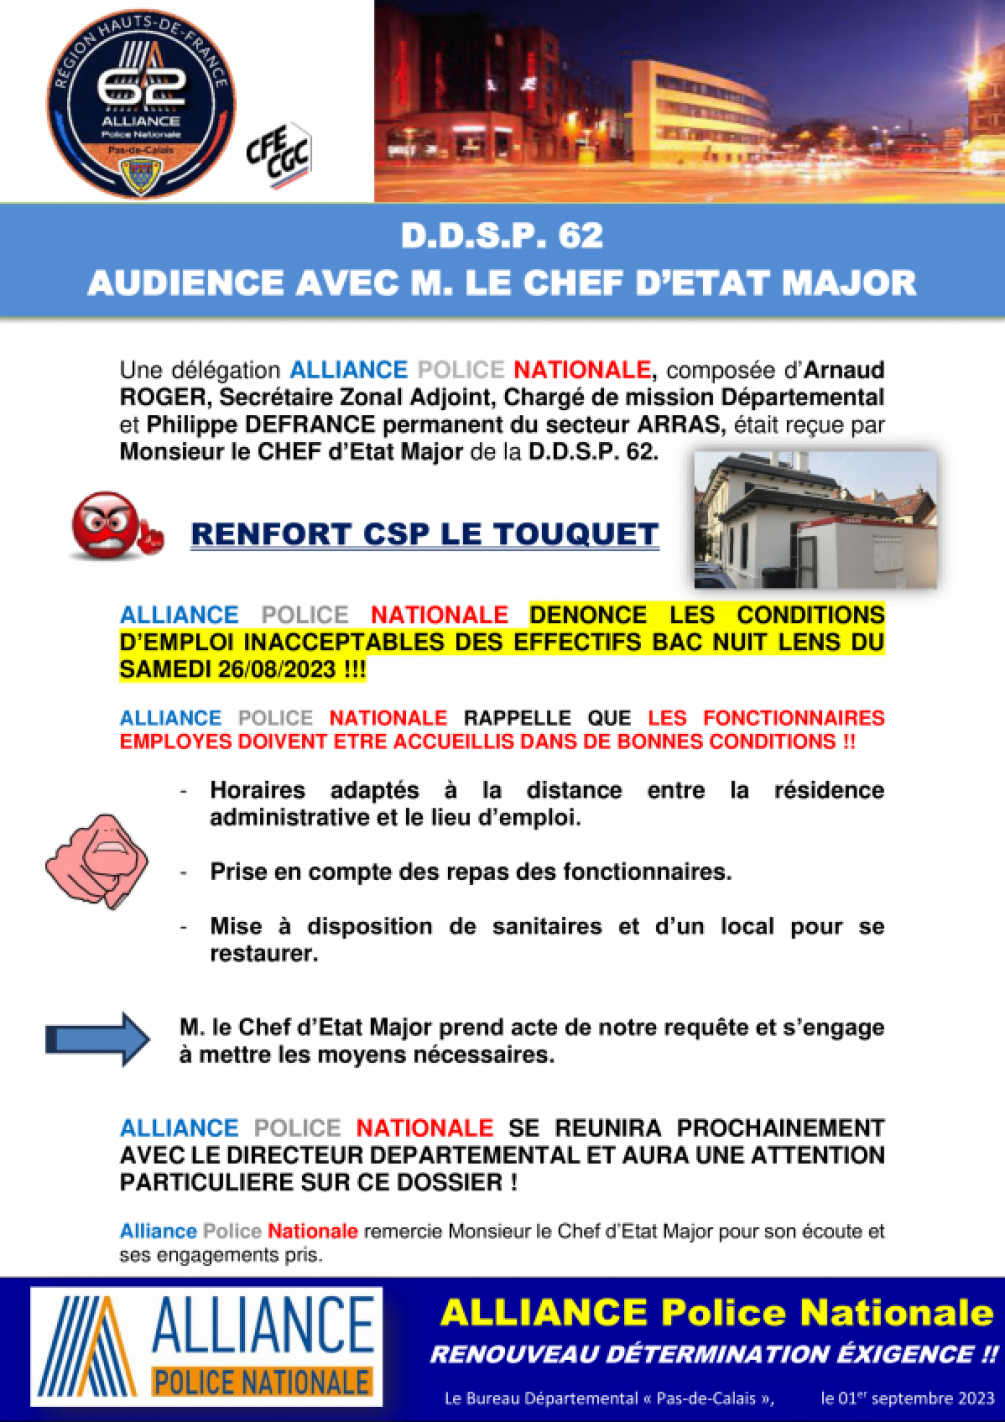 DDSP 62 : AUDIENCE RENFORTS CSP LE TOUQUET